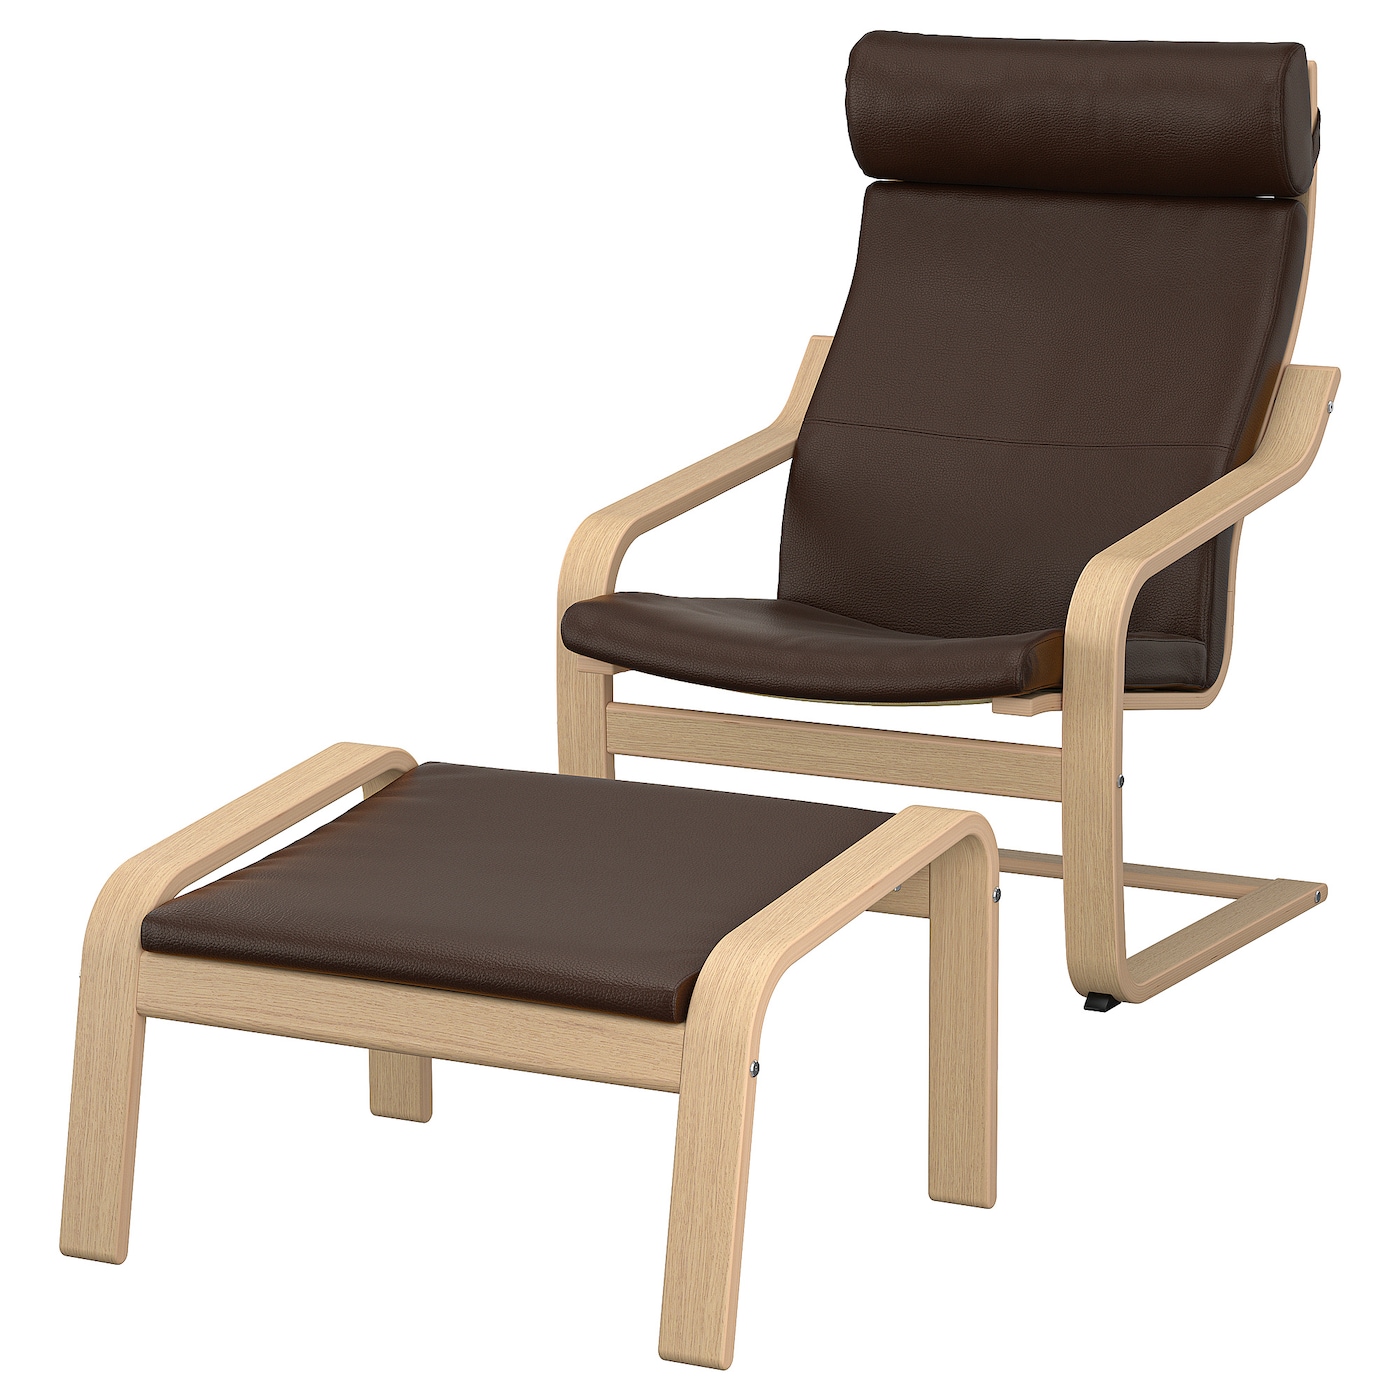 ПОЭНГ Кресло и подставка для ног, дубовый шпон светлый/Глянец темно-коричневый POÄNG IKEA